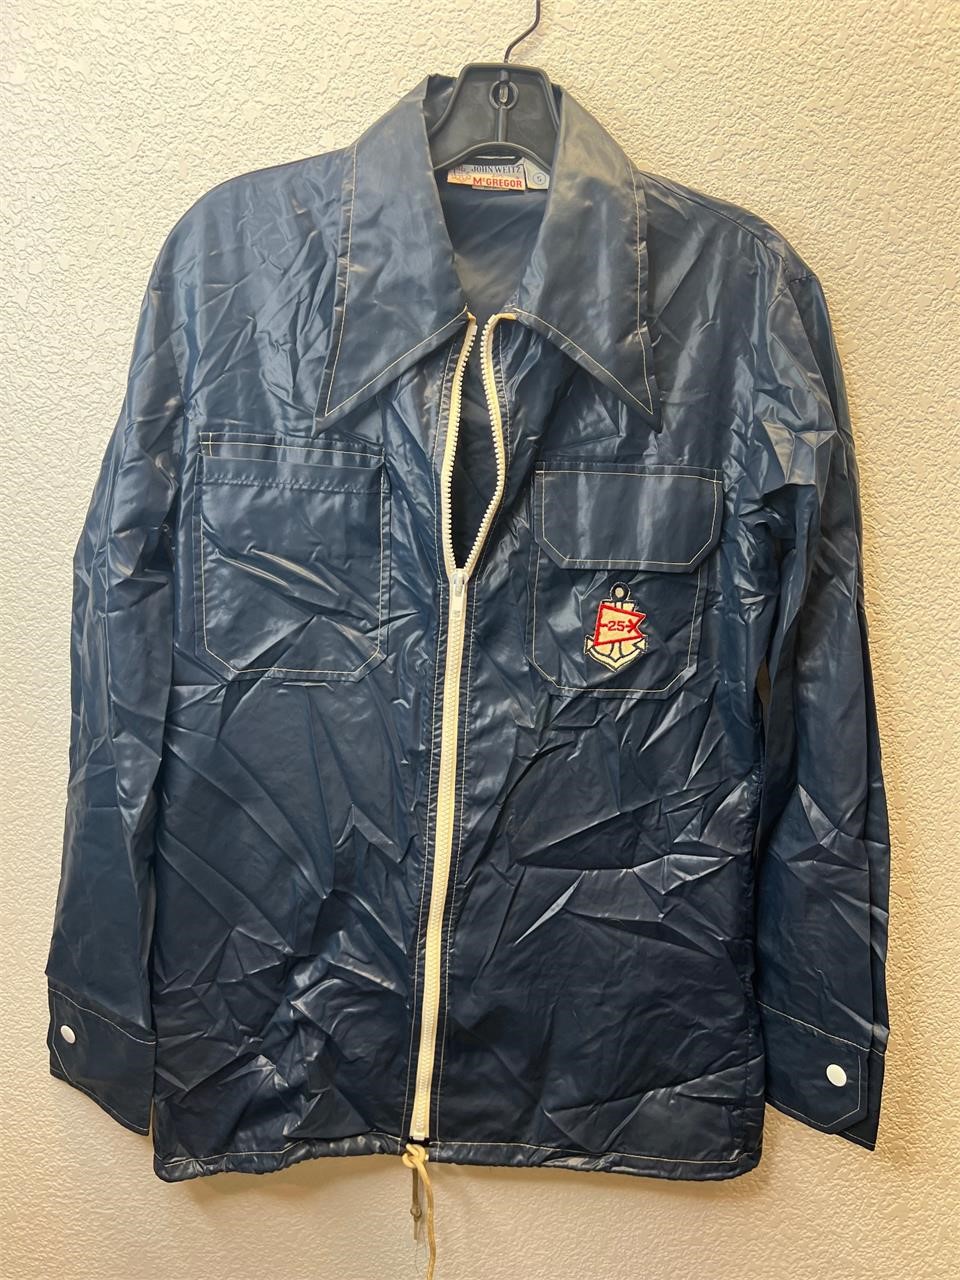 Vintage John Weitz McGregor Rain Jacket